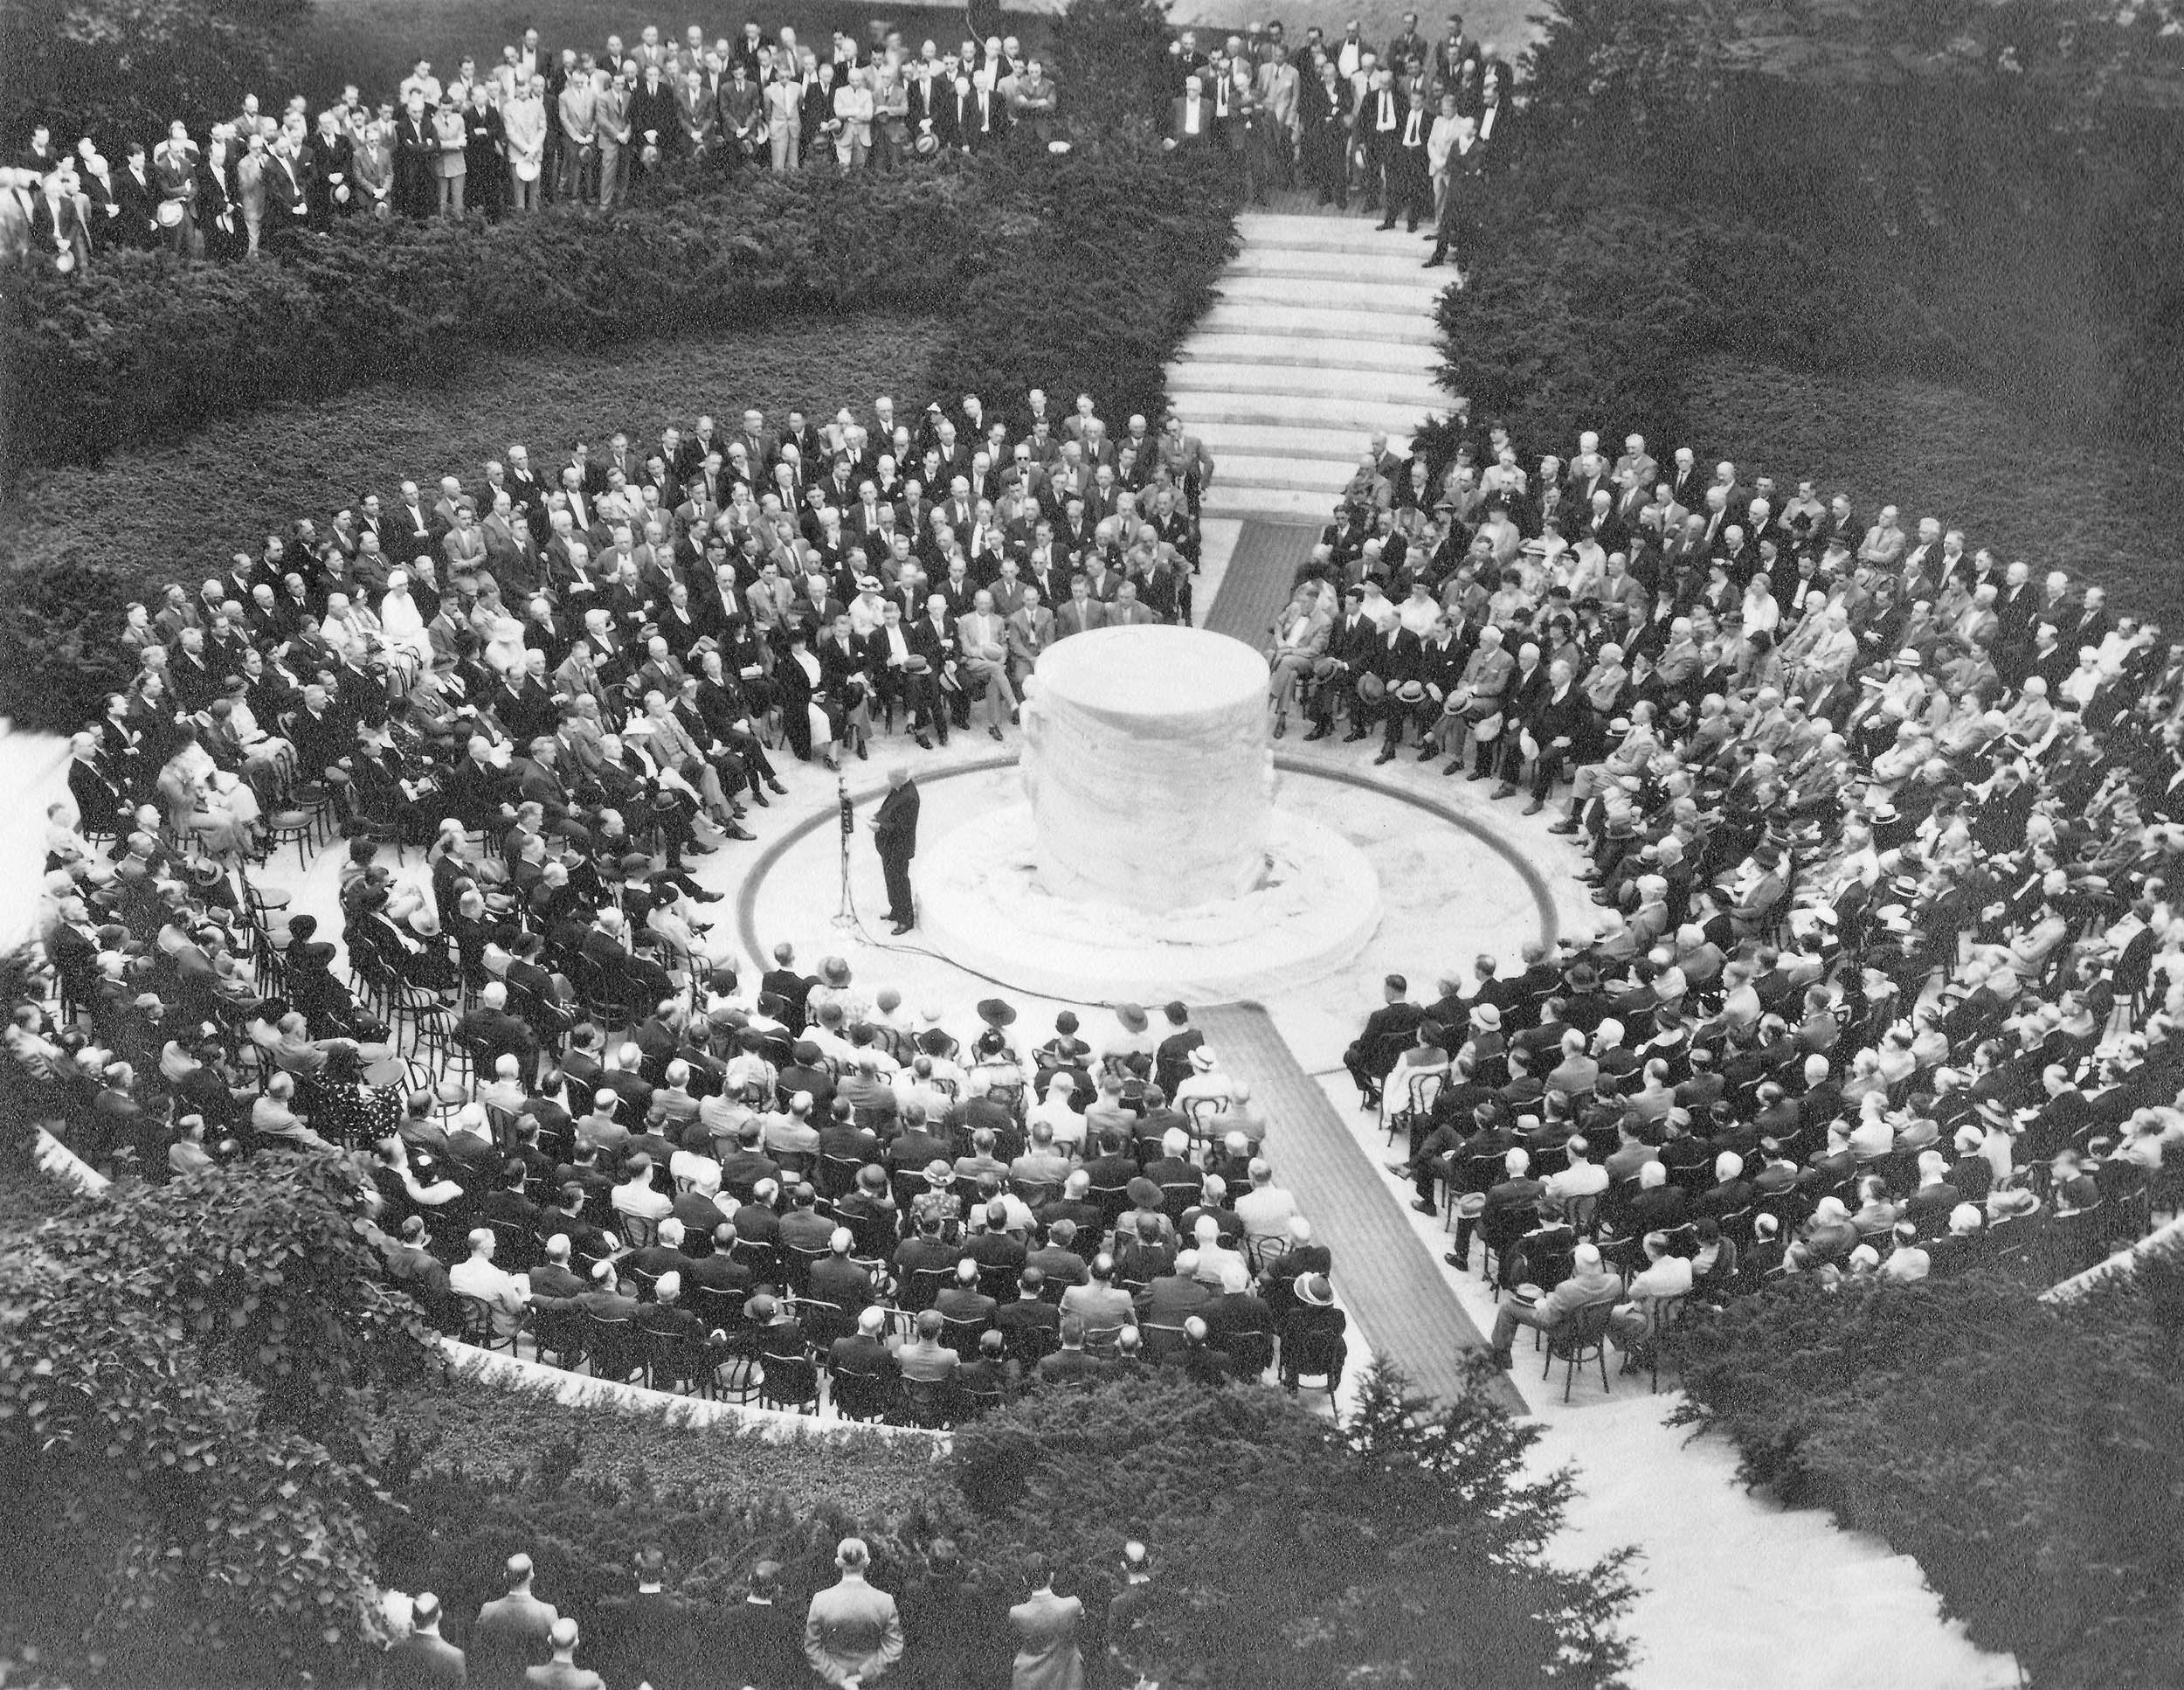 Dedication of the George Eastman Memorial